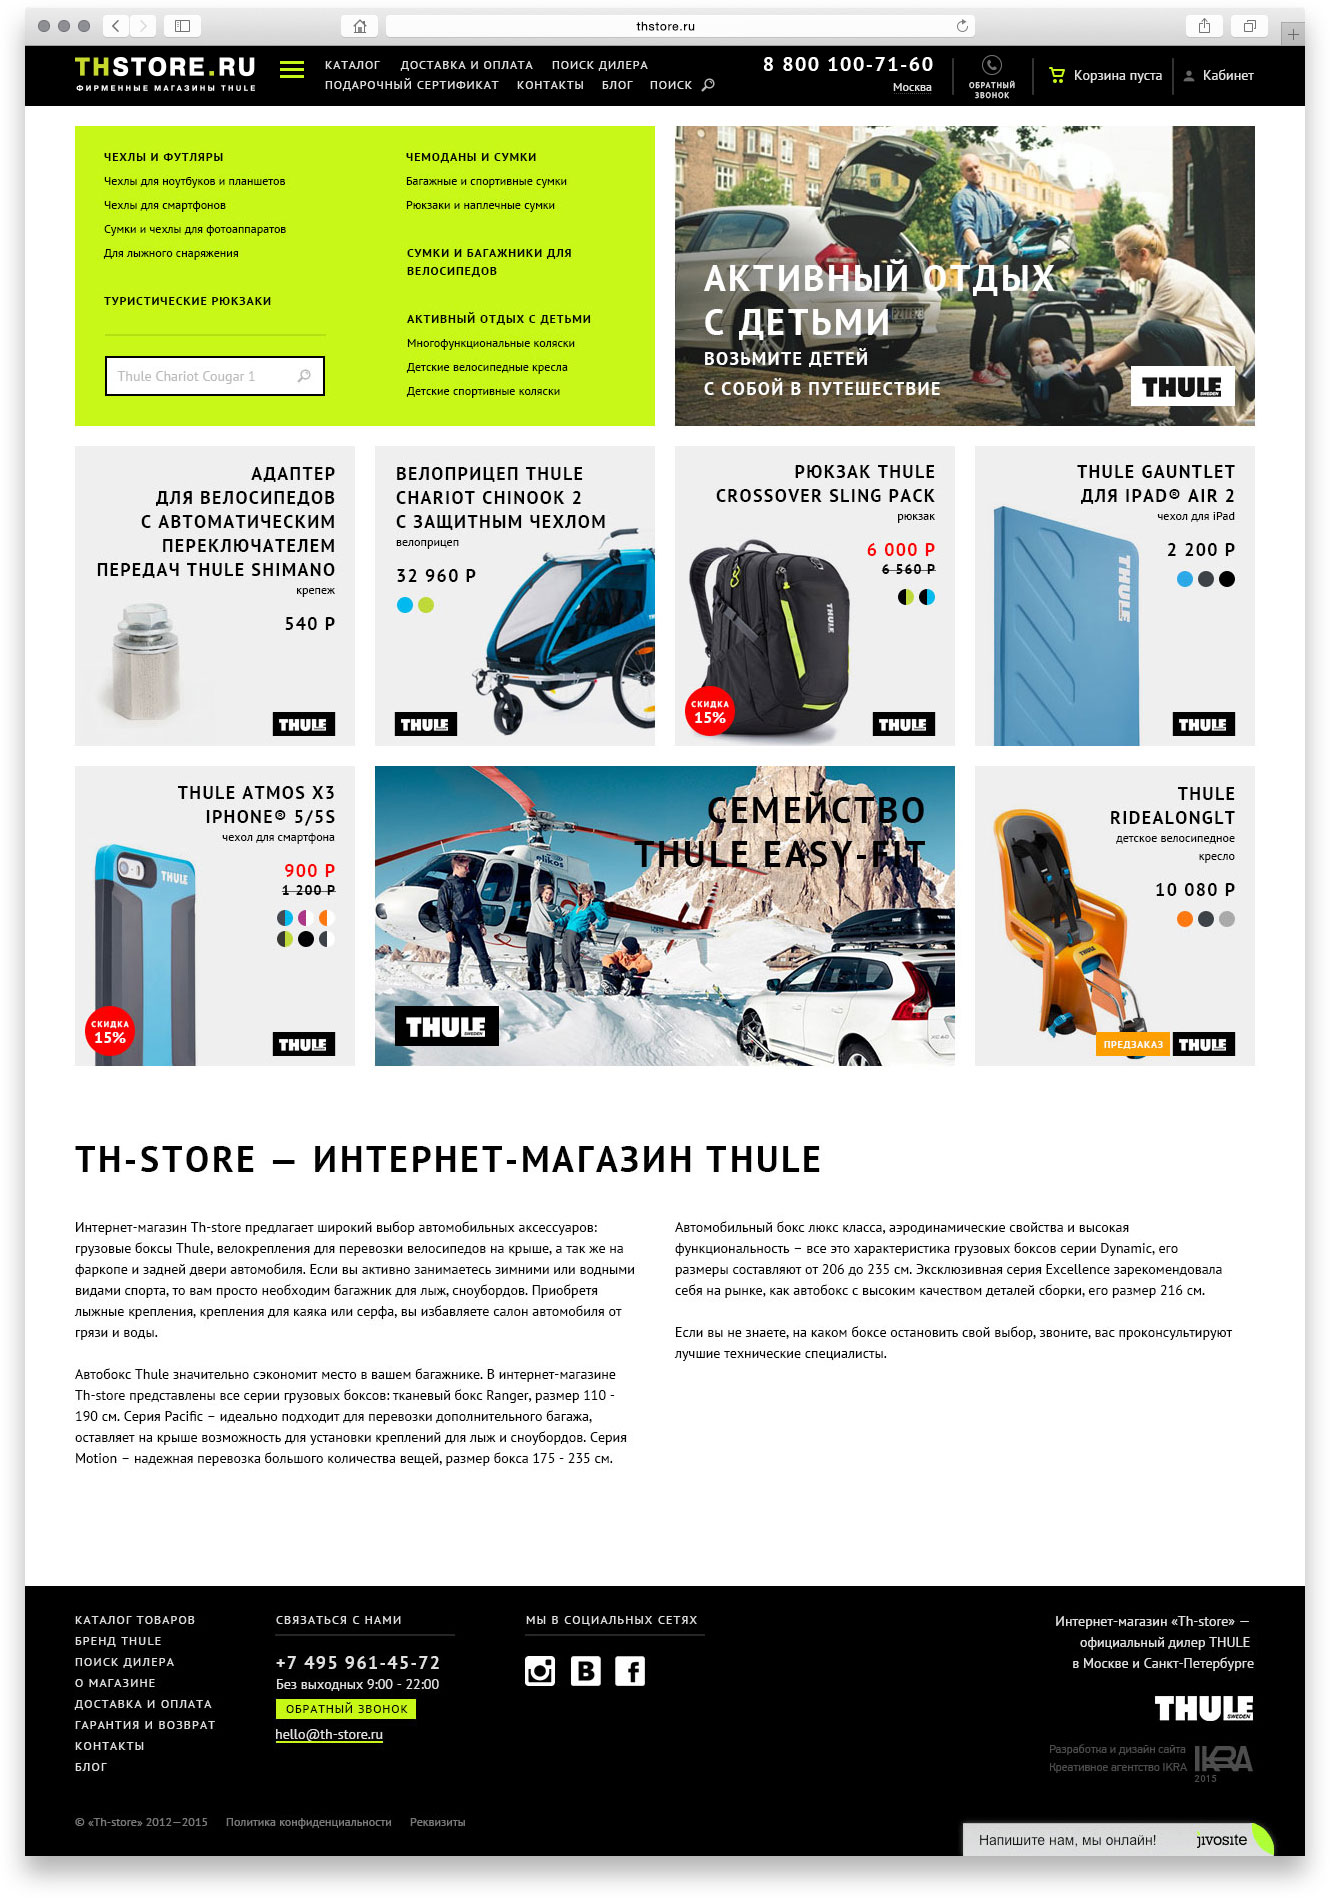 Создание дизайна фирменного интернет-магазина Thule